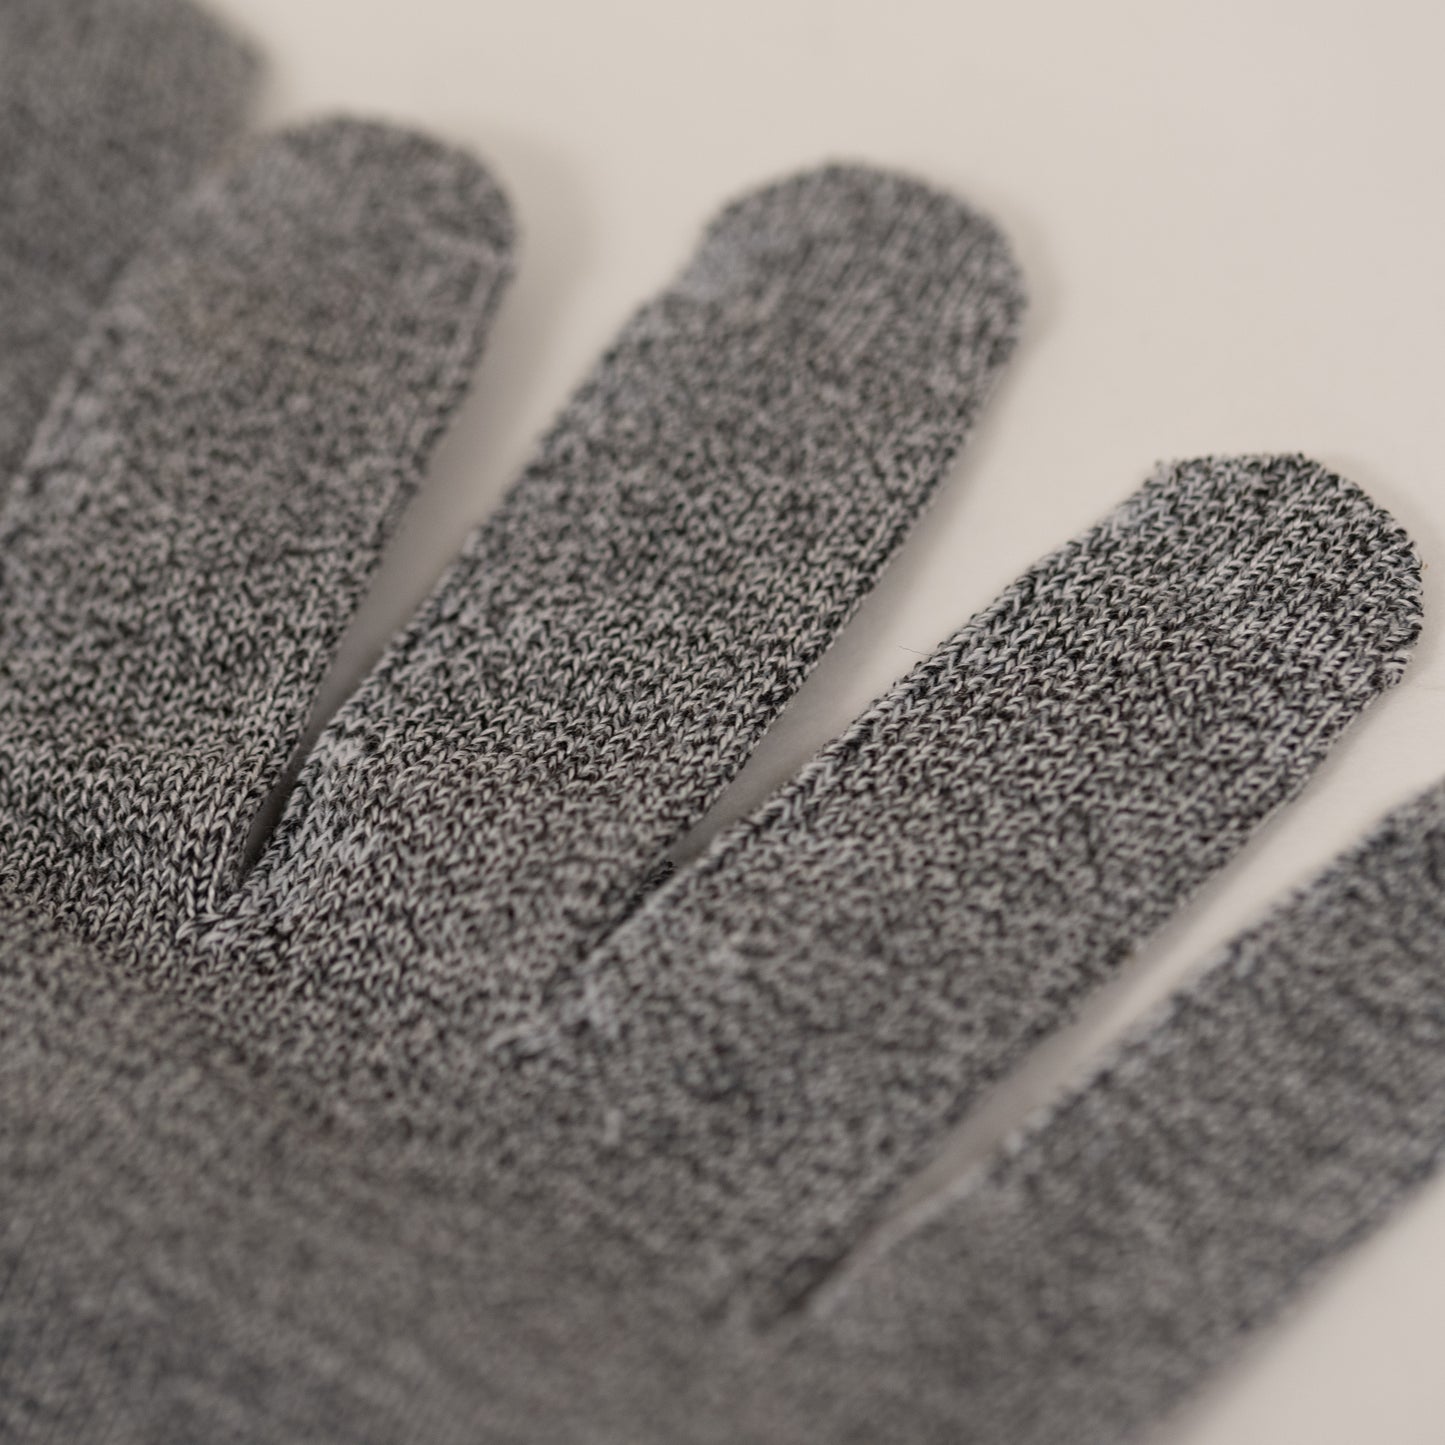 Tflex Plus Handling Gloves